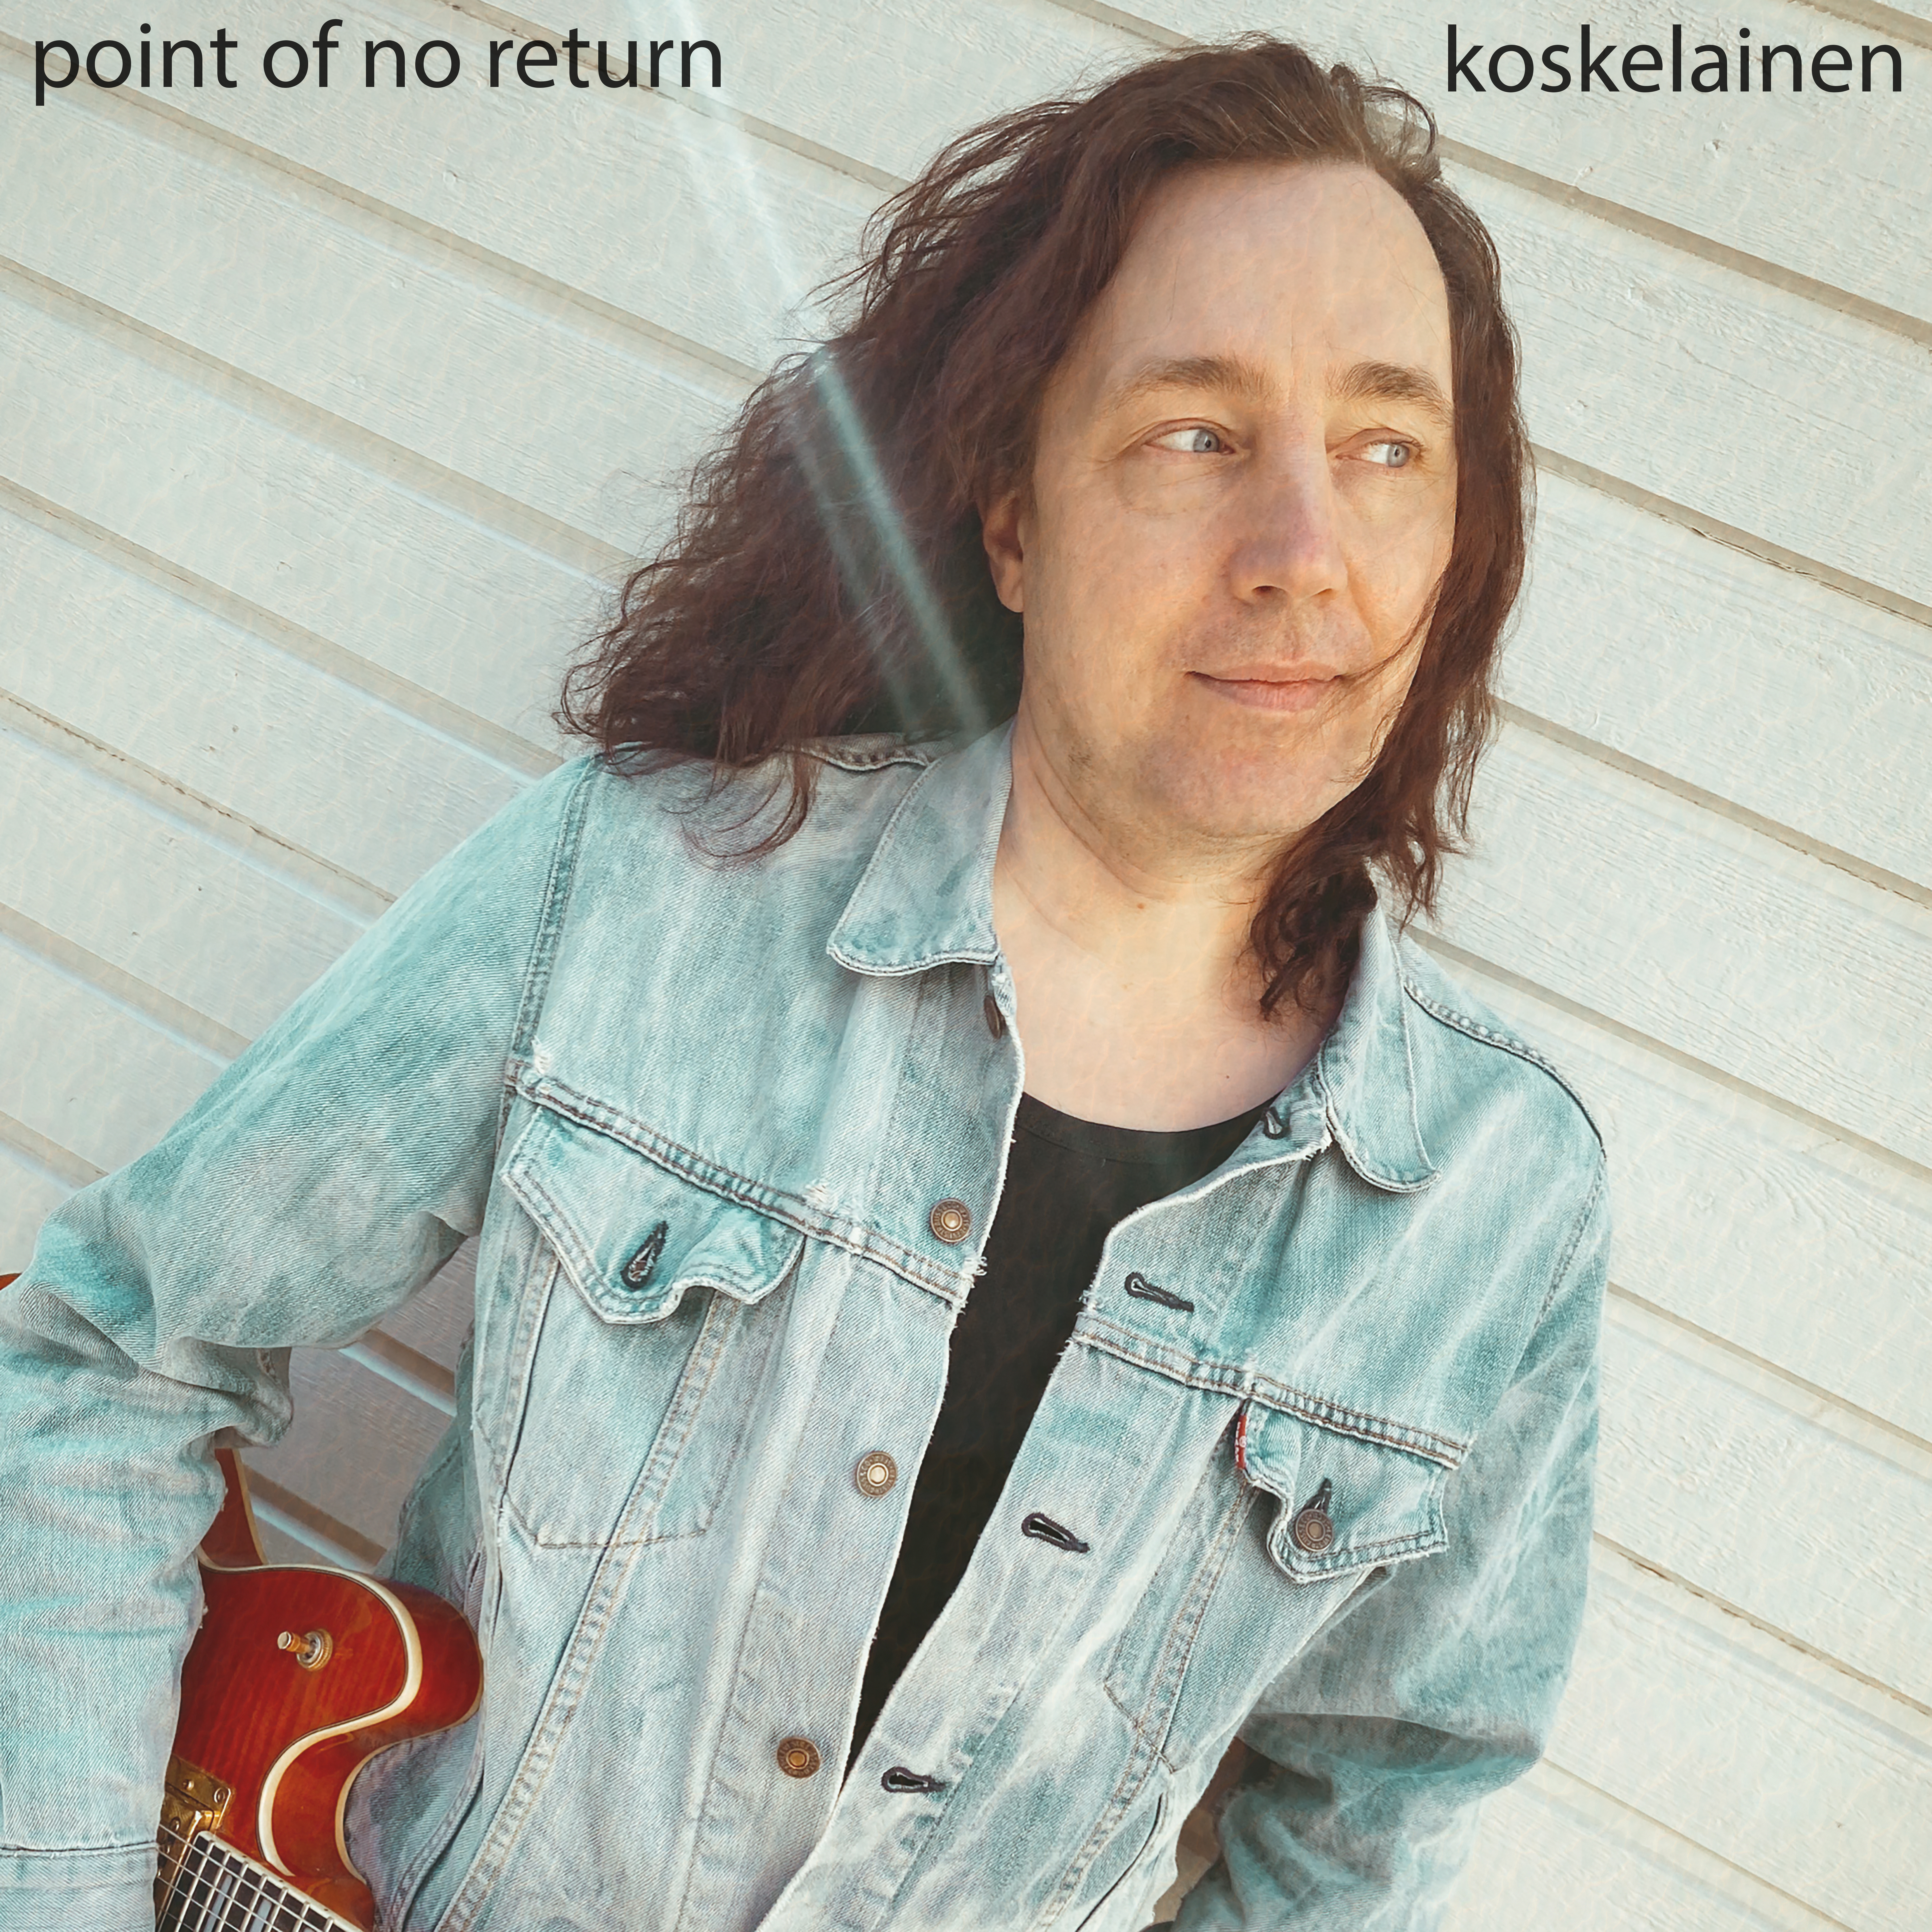 Point of no return KANSI